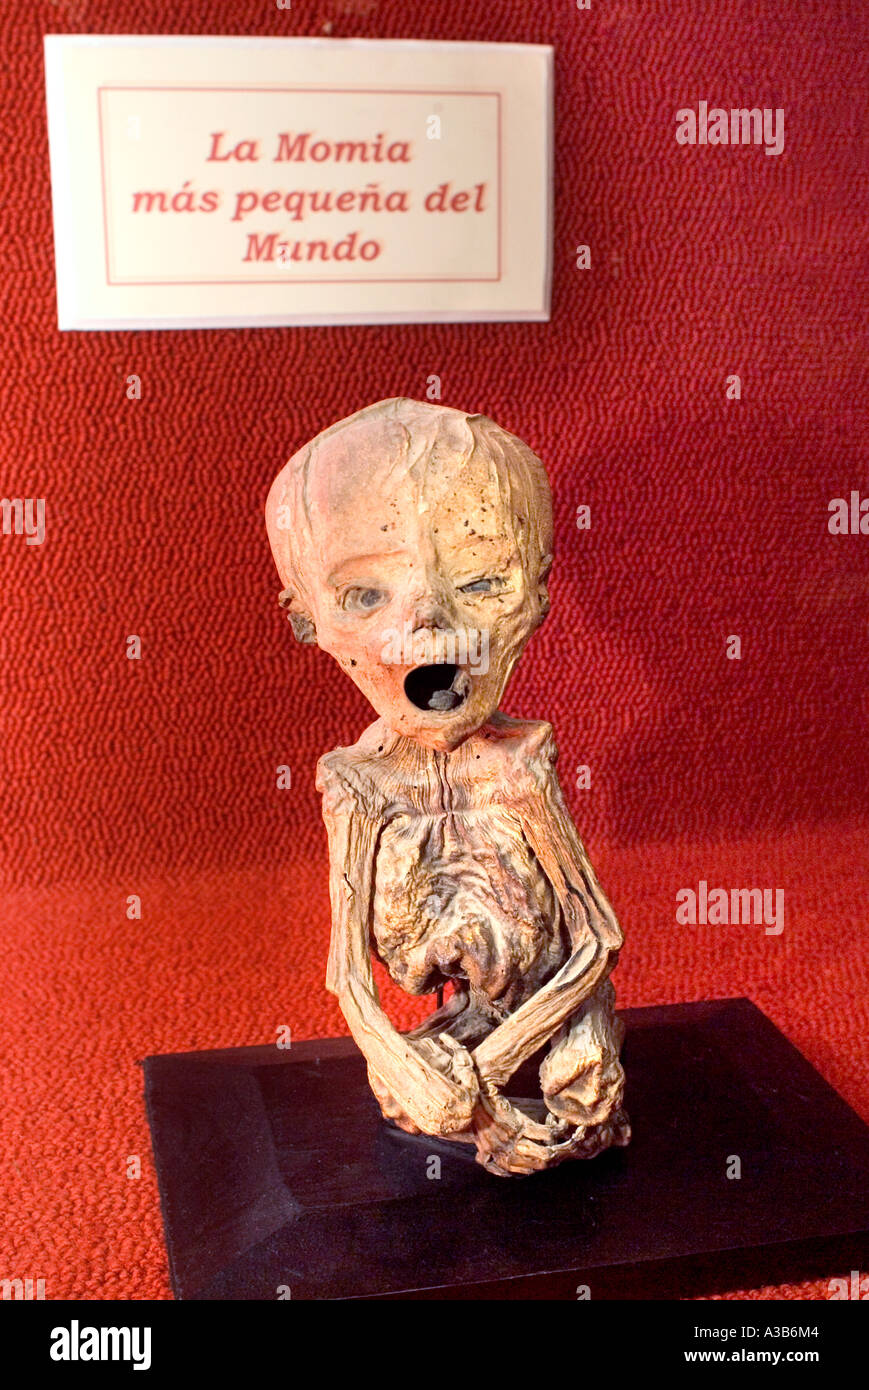 Mummy Museum known as El Museo de las Momias Guanajuato Mexico Stock Photo